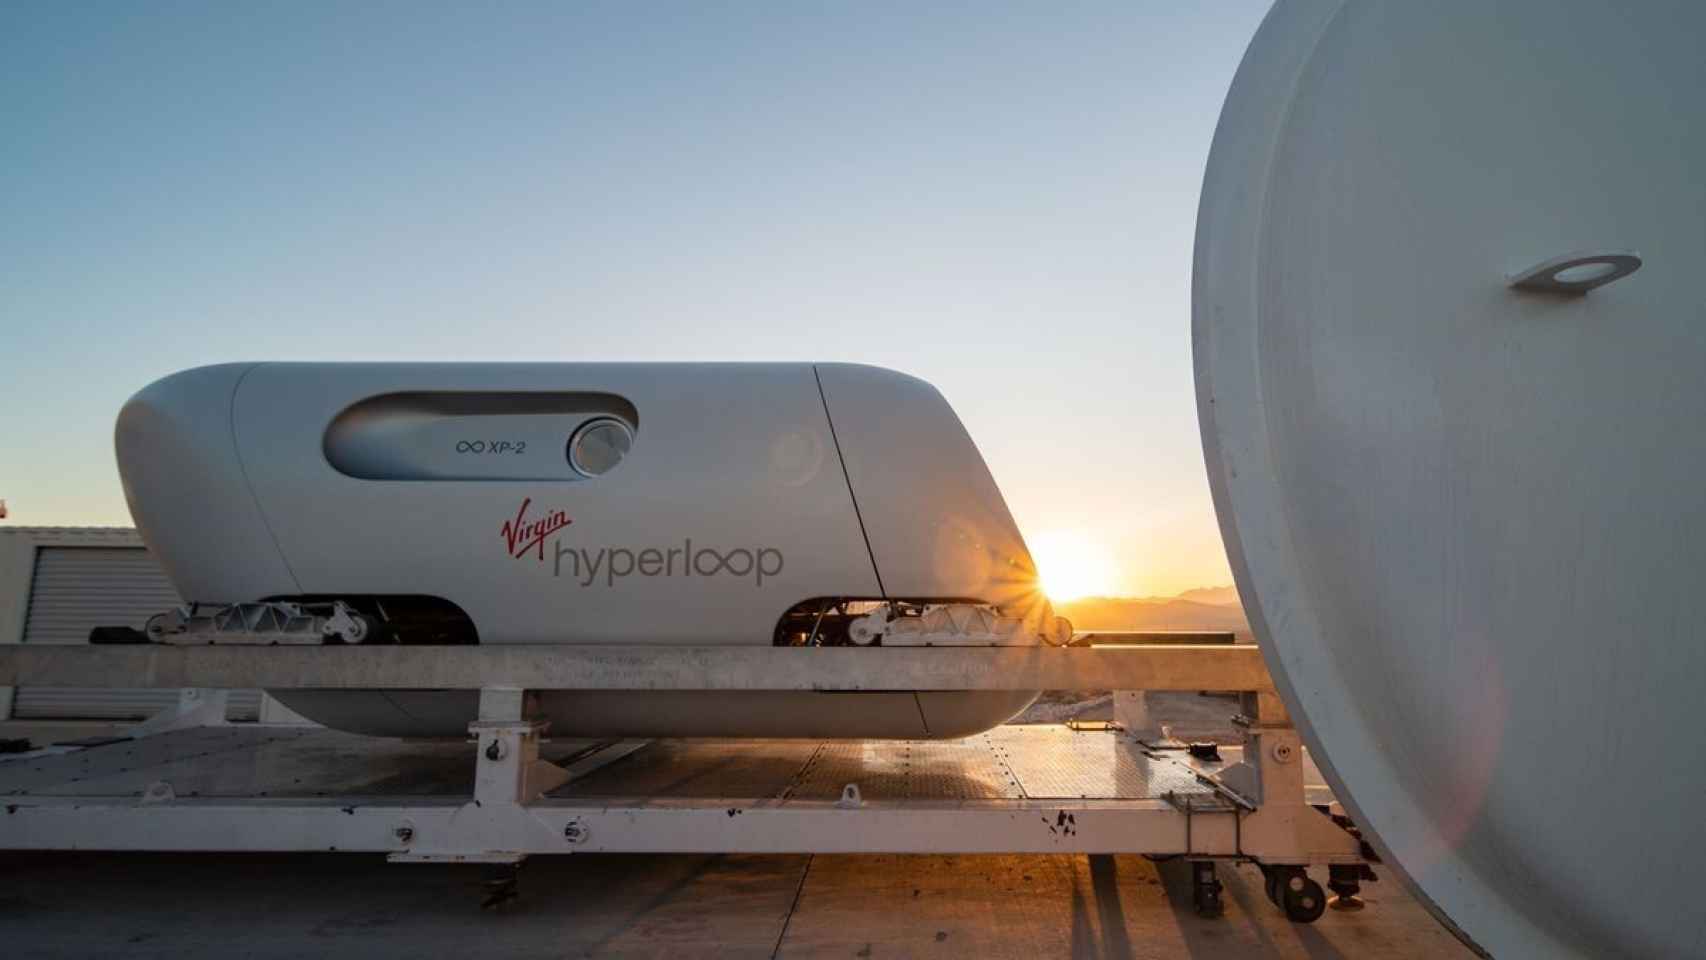 La cápsula XP-2 de Virgin Hyperloop, empleada en las pruebas con pasajeros en Las Vegas en 2020.